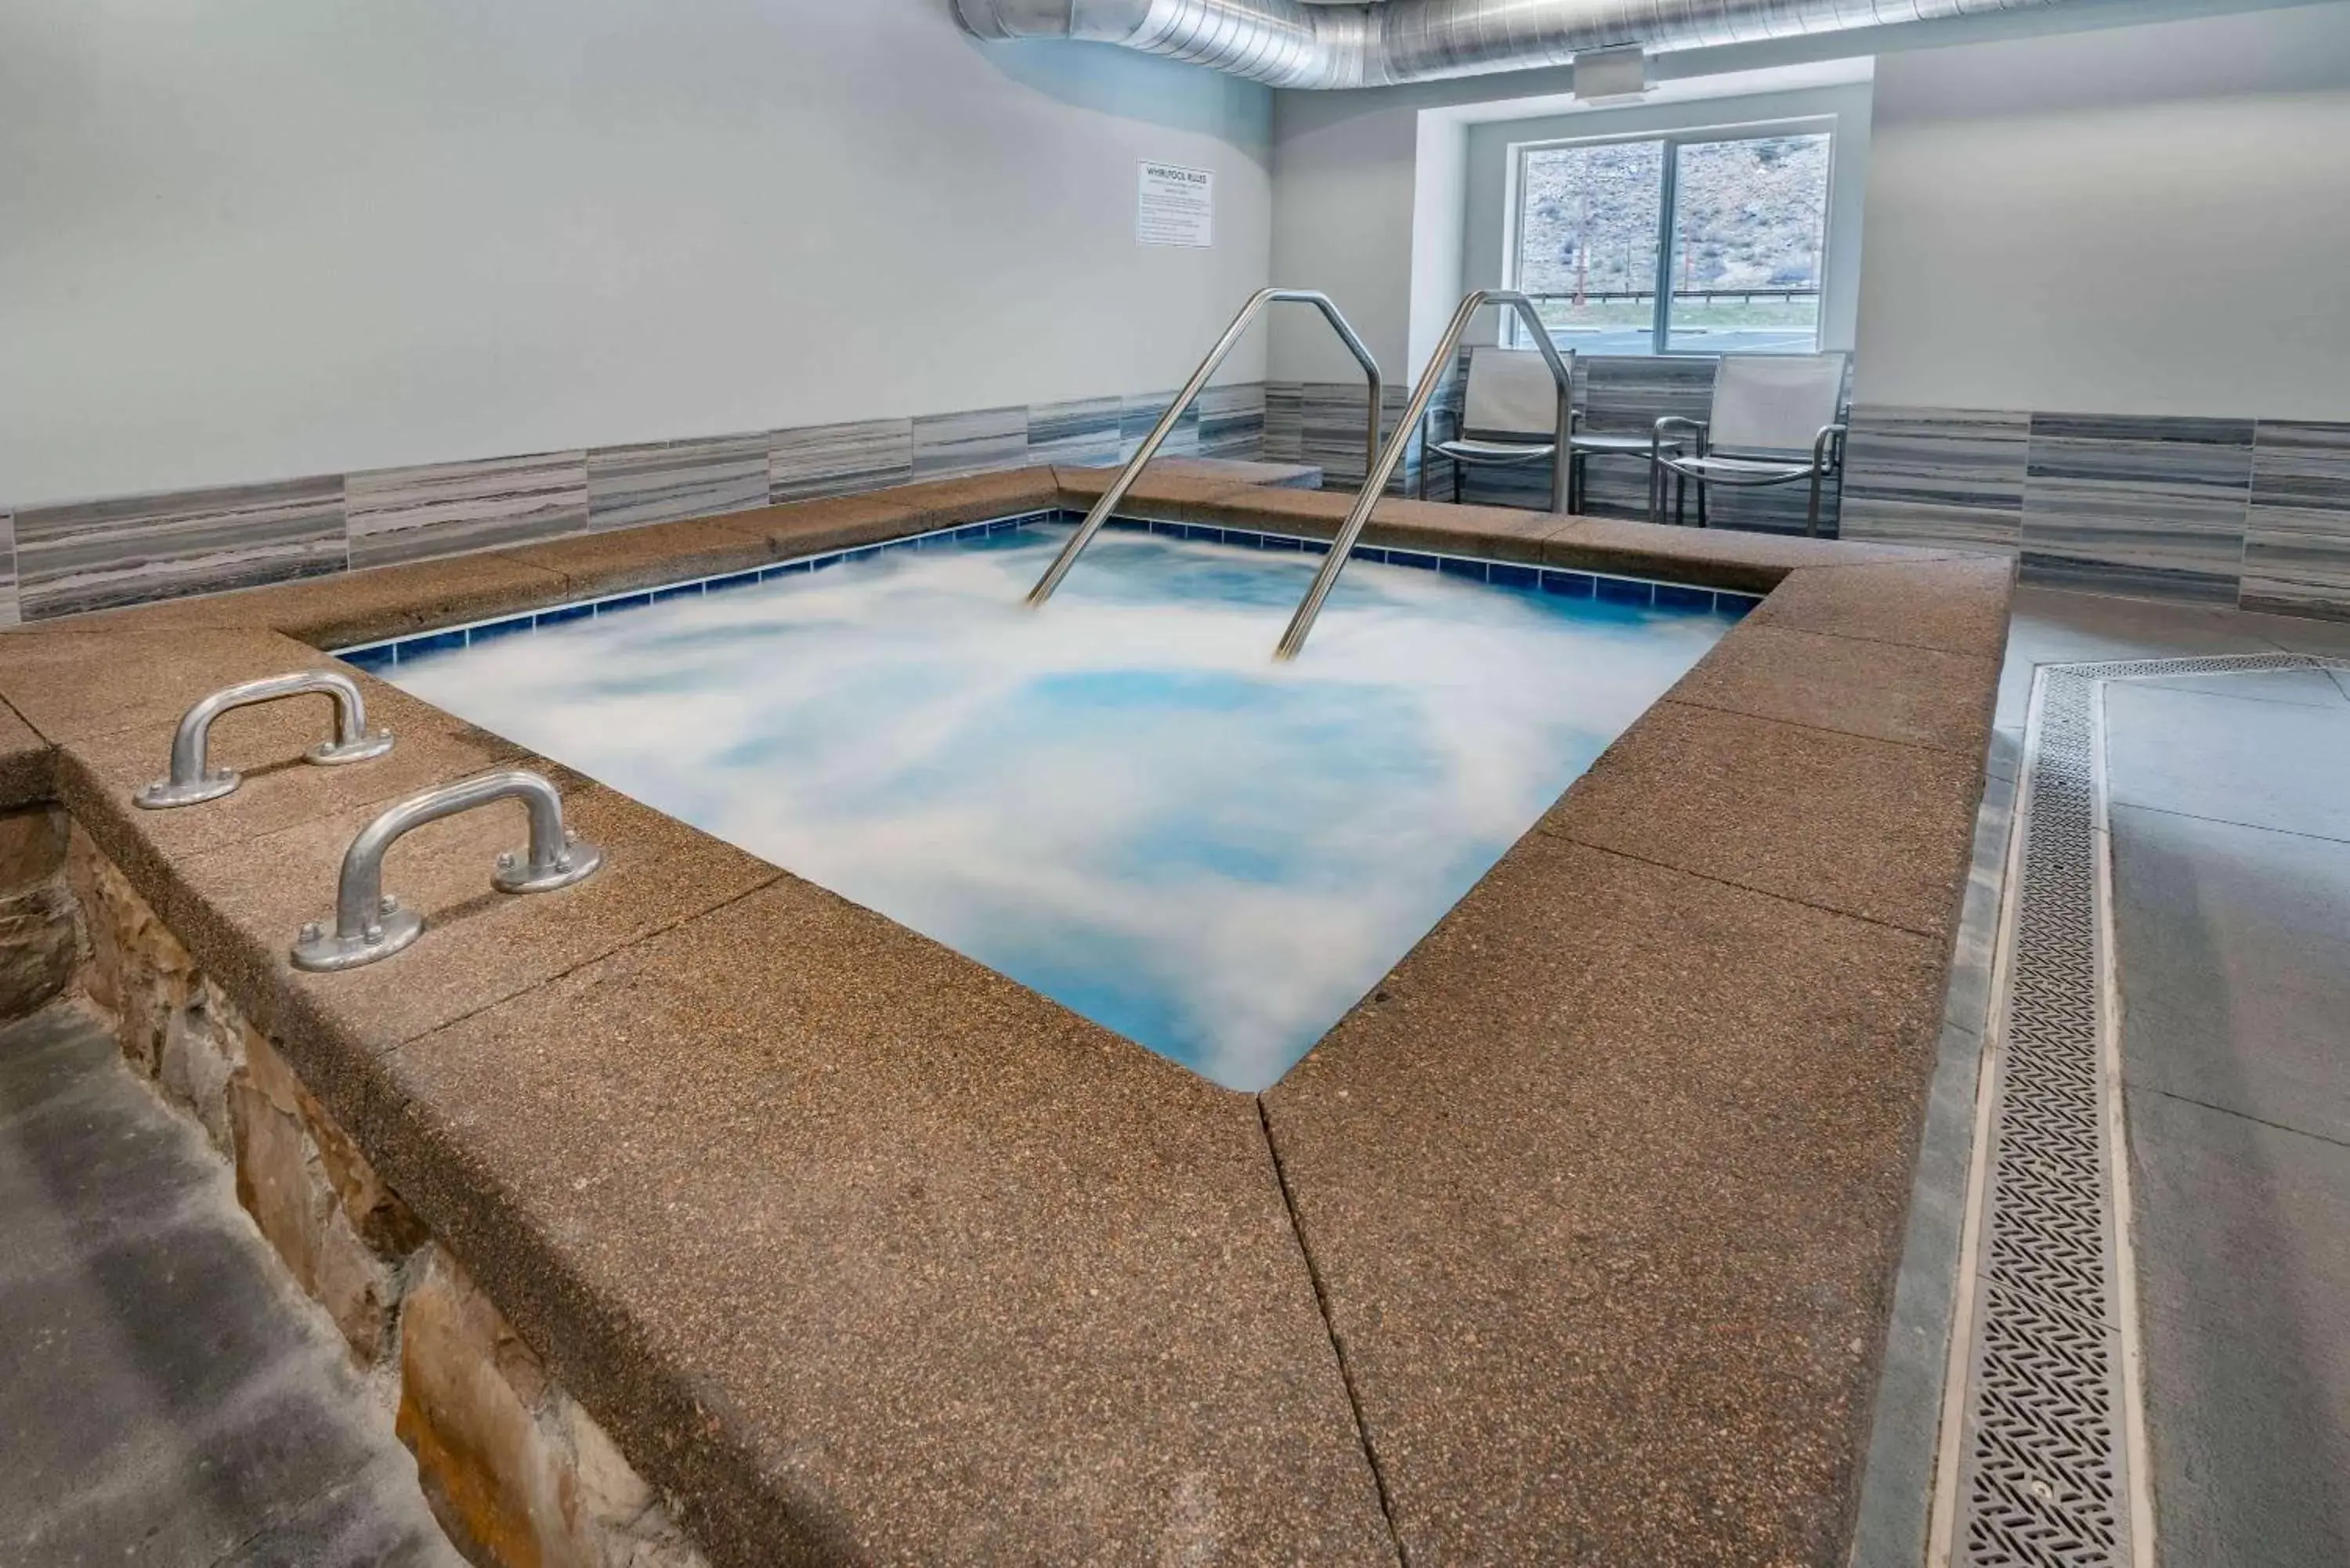 Hot Tub, Swimming Pool in Microtel Inn & Suites by Wyndham Georgetown Lake